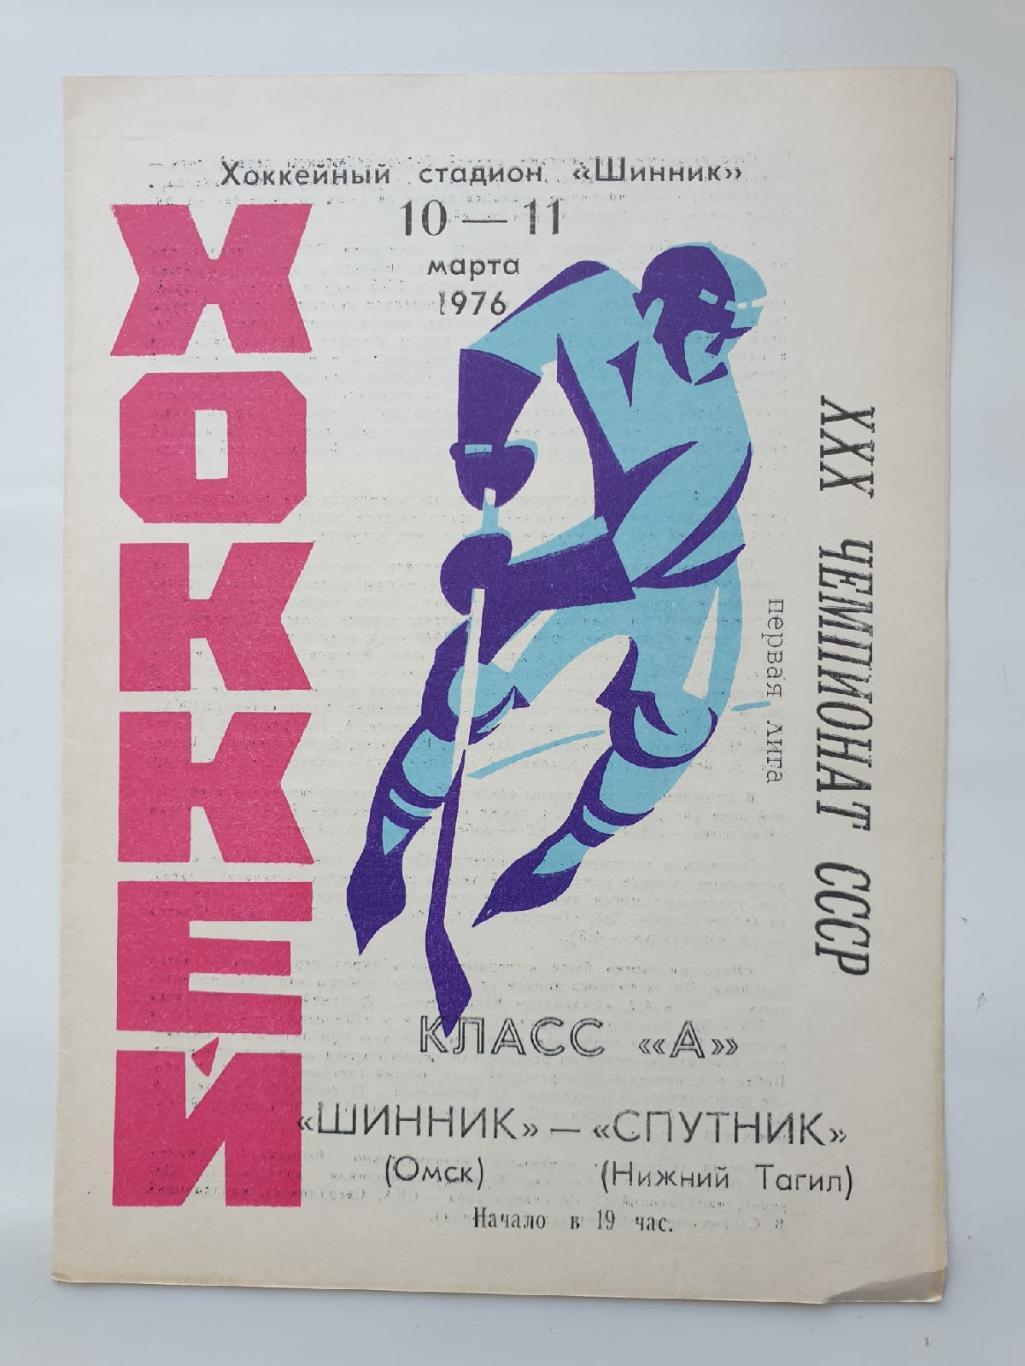 Шинник Омск - Спутник Нижний Тагил 10/11 марта 1976